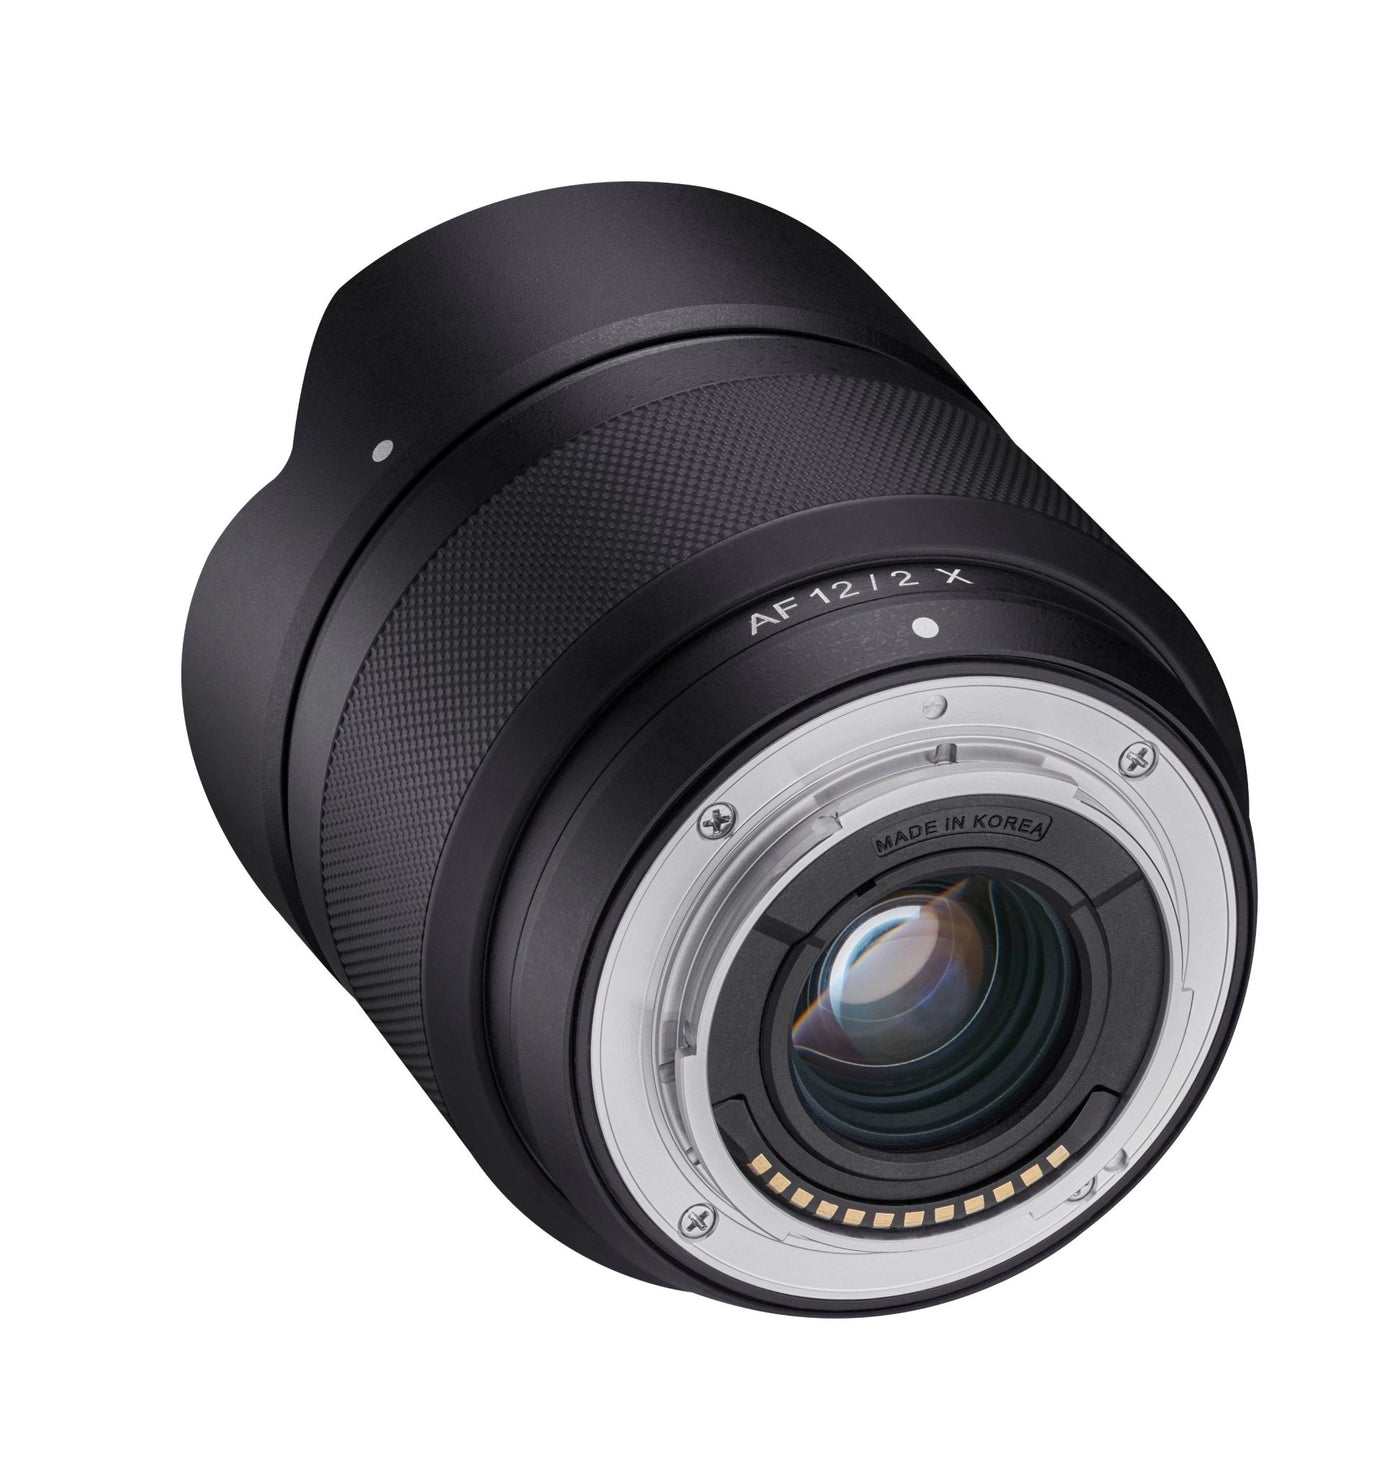 bitter Slaapkamer Clip vlinder 12mm F2.0 AF APS-C Compact Ultra Wide Angle (Fuji X) - Rokinon Lenses –  Rokinonlenses